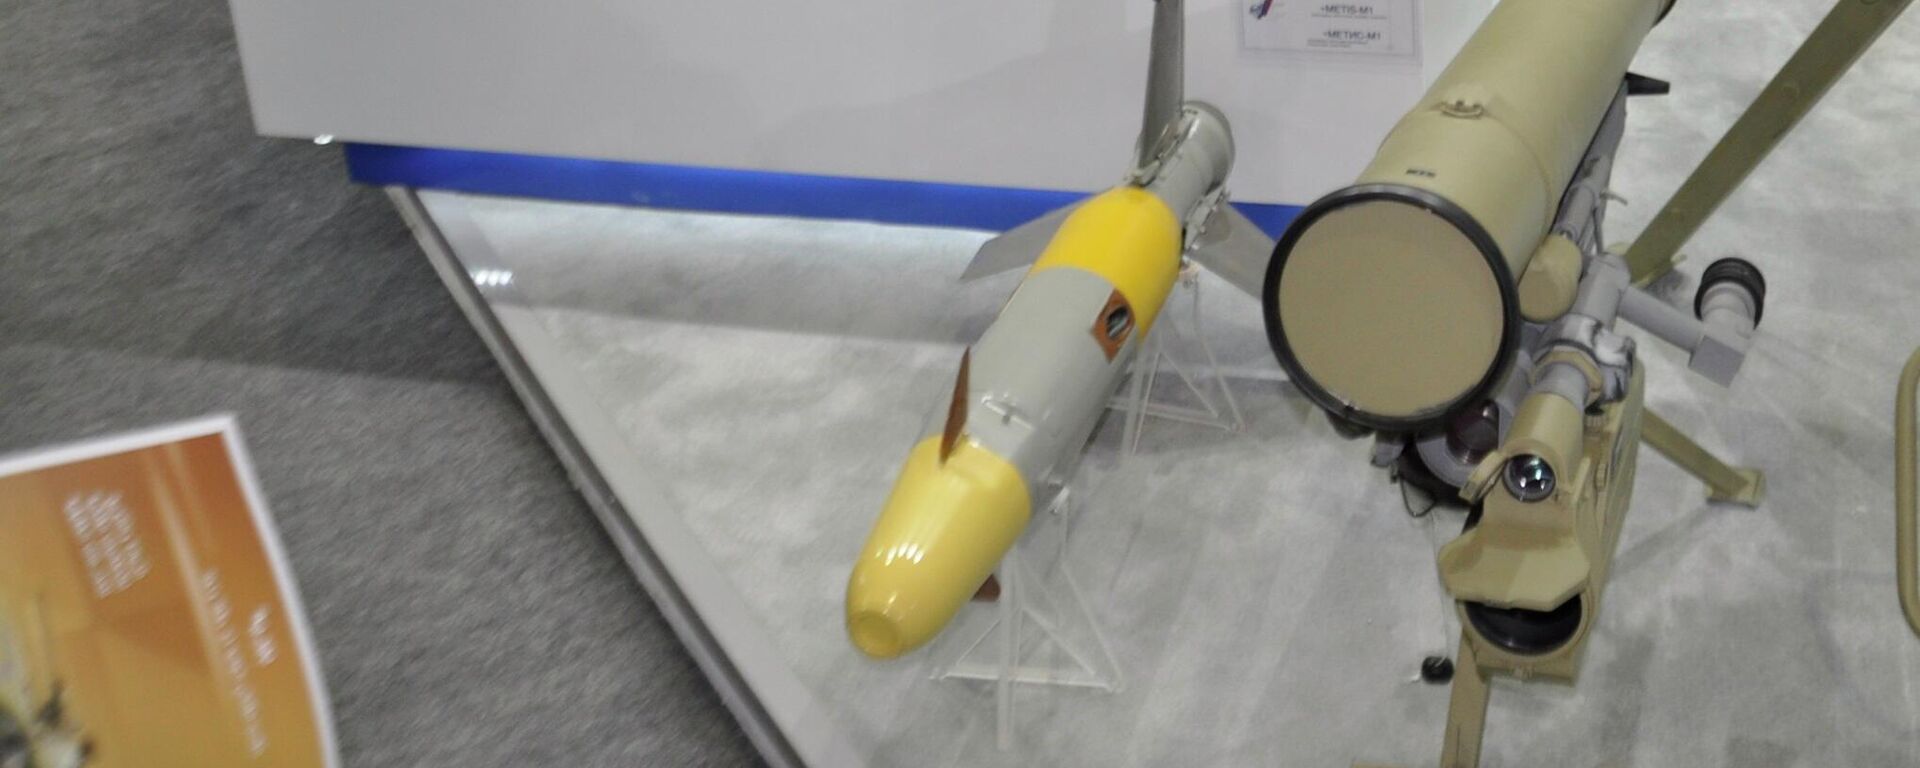 صواريخ ميتيس إم 1 الروسية المضادة للدبابات في معرض الصناعات الدفاعية المصرية إيديكس 2021 - سبوتنيك عربي, 1920, 04.12.2021